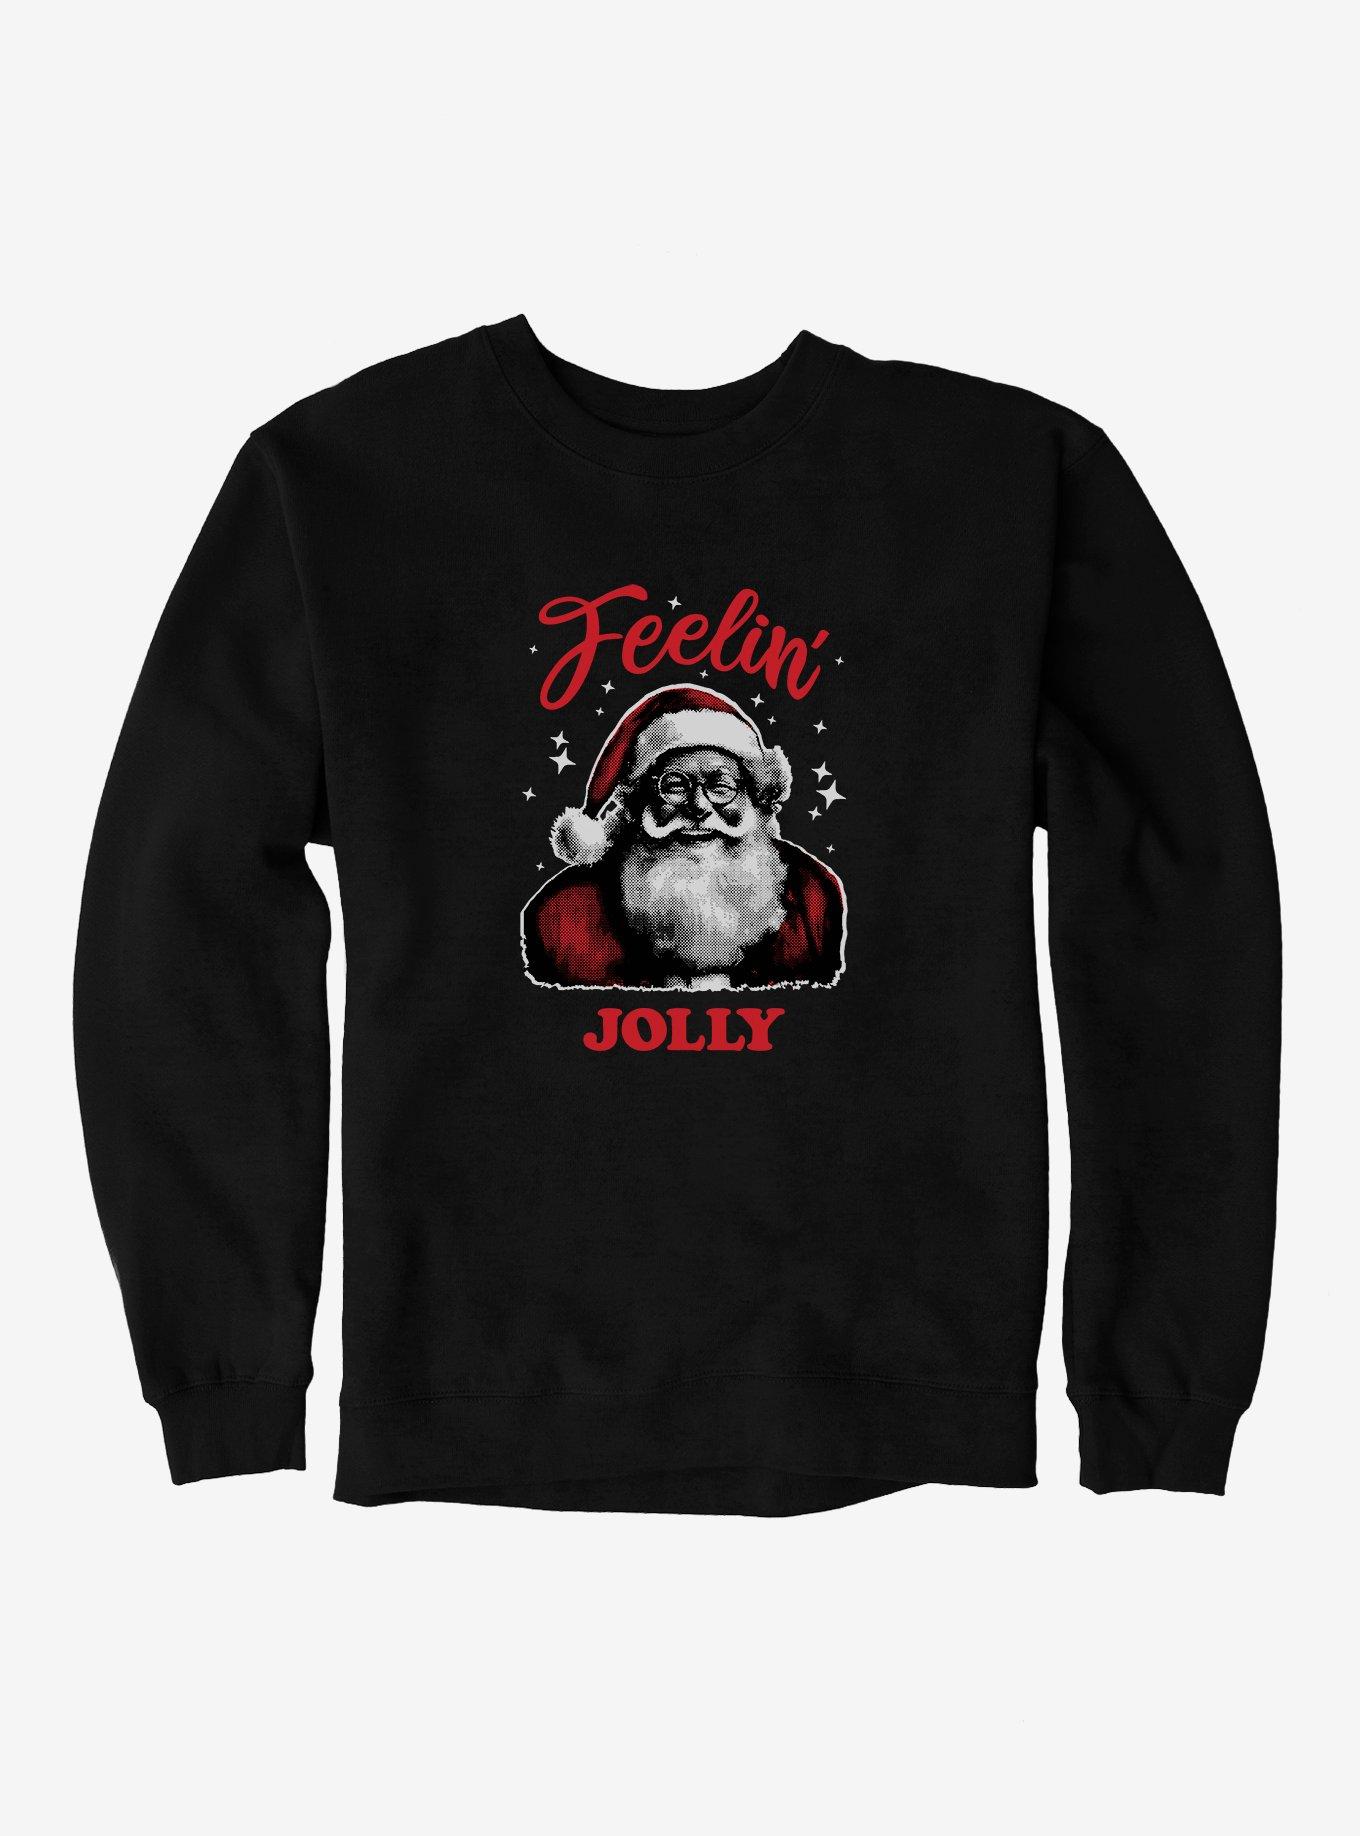 Hot Topic Feelin' Jolly Sweatshirt